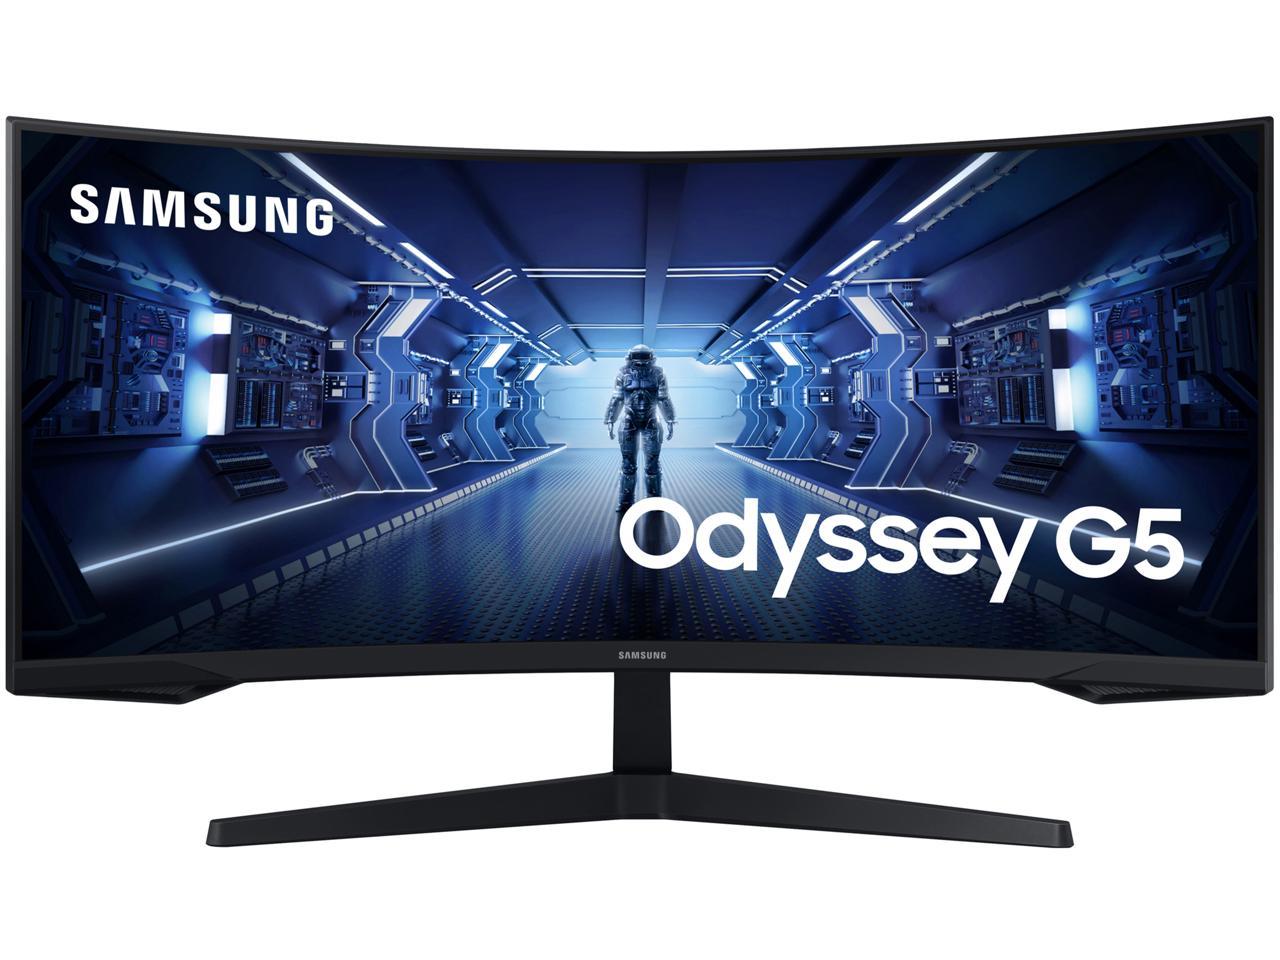 Samsung EPP/EDU: 34" G5 Odyssey Ultra WQHD 165Hz FreeSync 1ms 1000R Curved Gaming Monitor @ $377.99